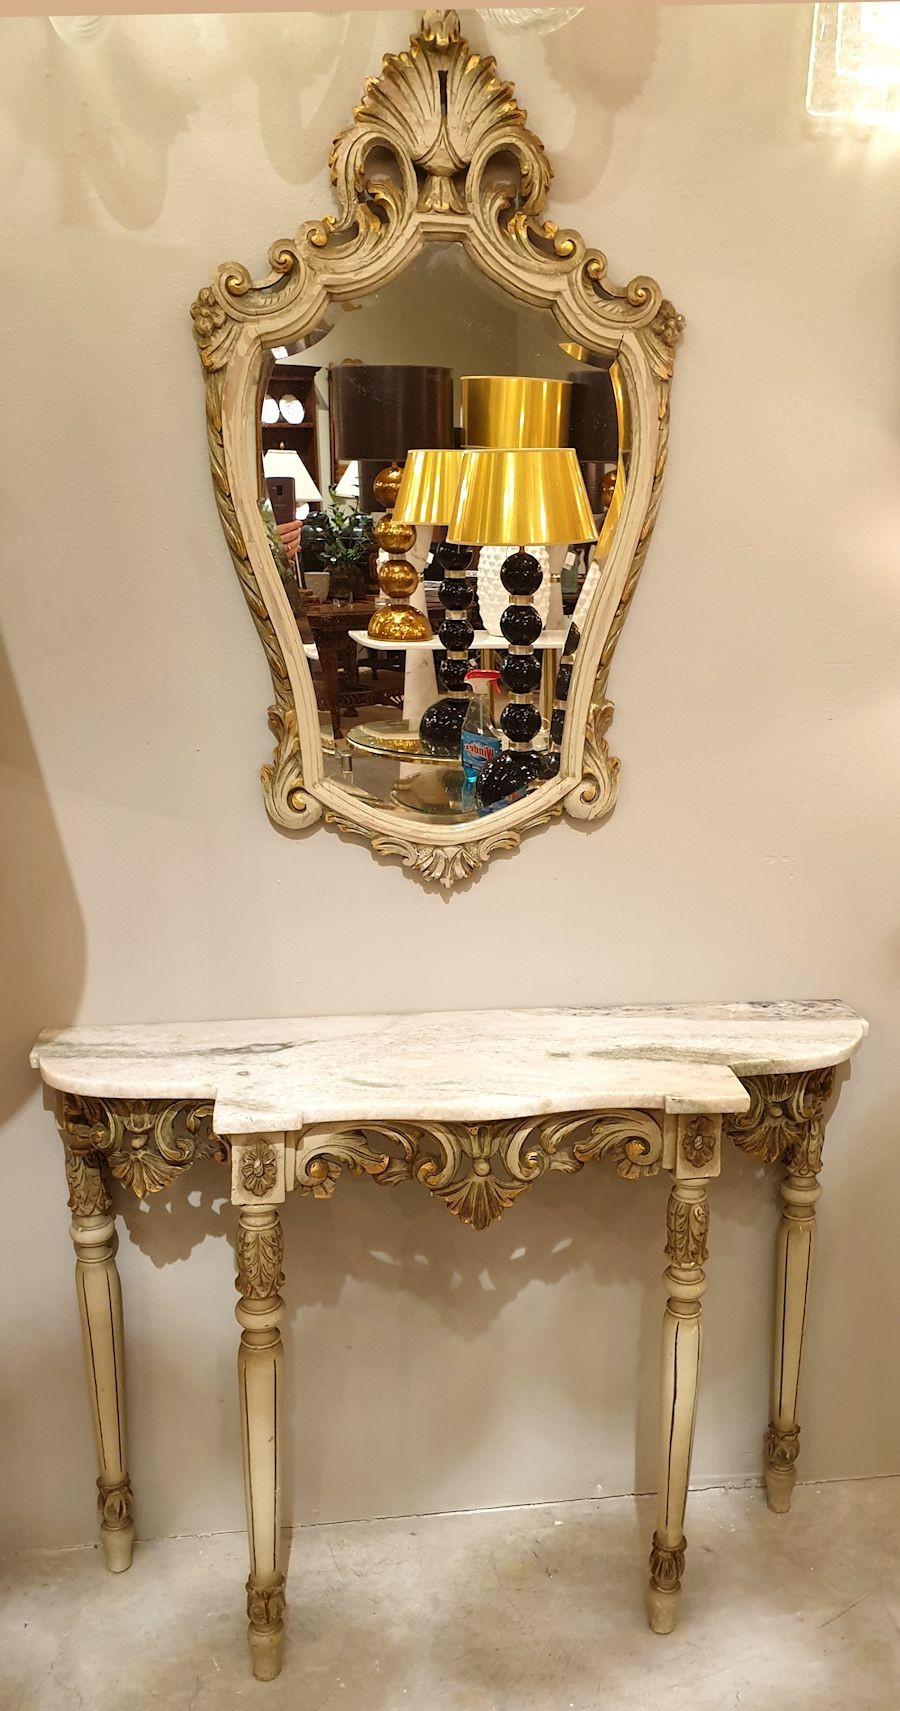 Ensemble composé d'une table console décorative à quatre pieds et d'un grand miroir mural assorti. Style Louis XV, France, années 1920 ou antérieures.
L'ensemble console et miroir néoclassique est réalisé en bois doré et peint en vert clair.
Cet